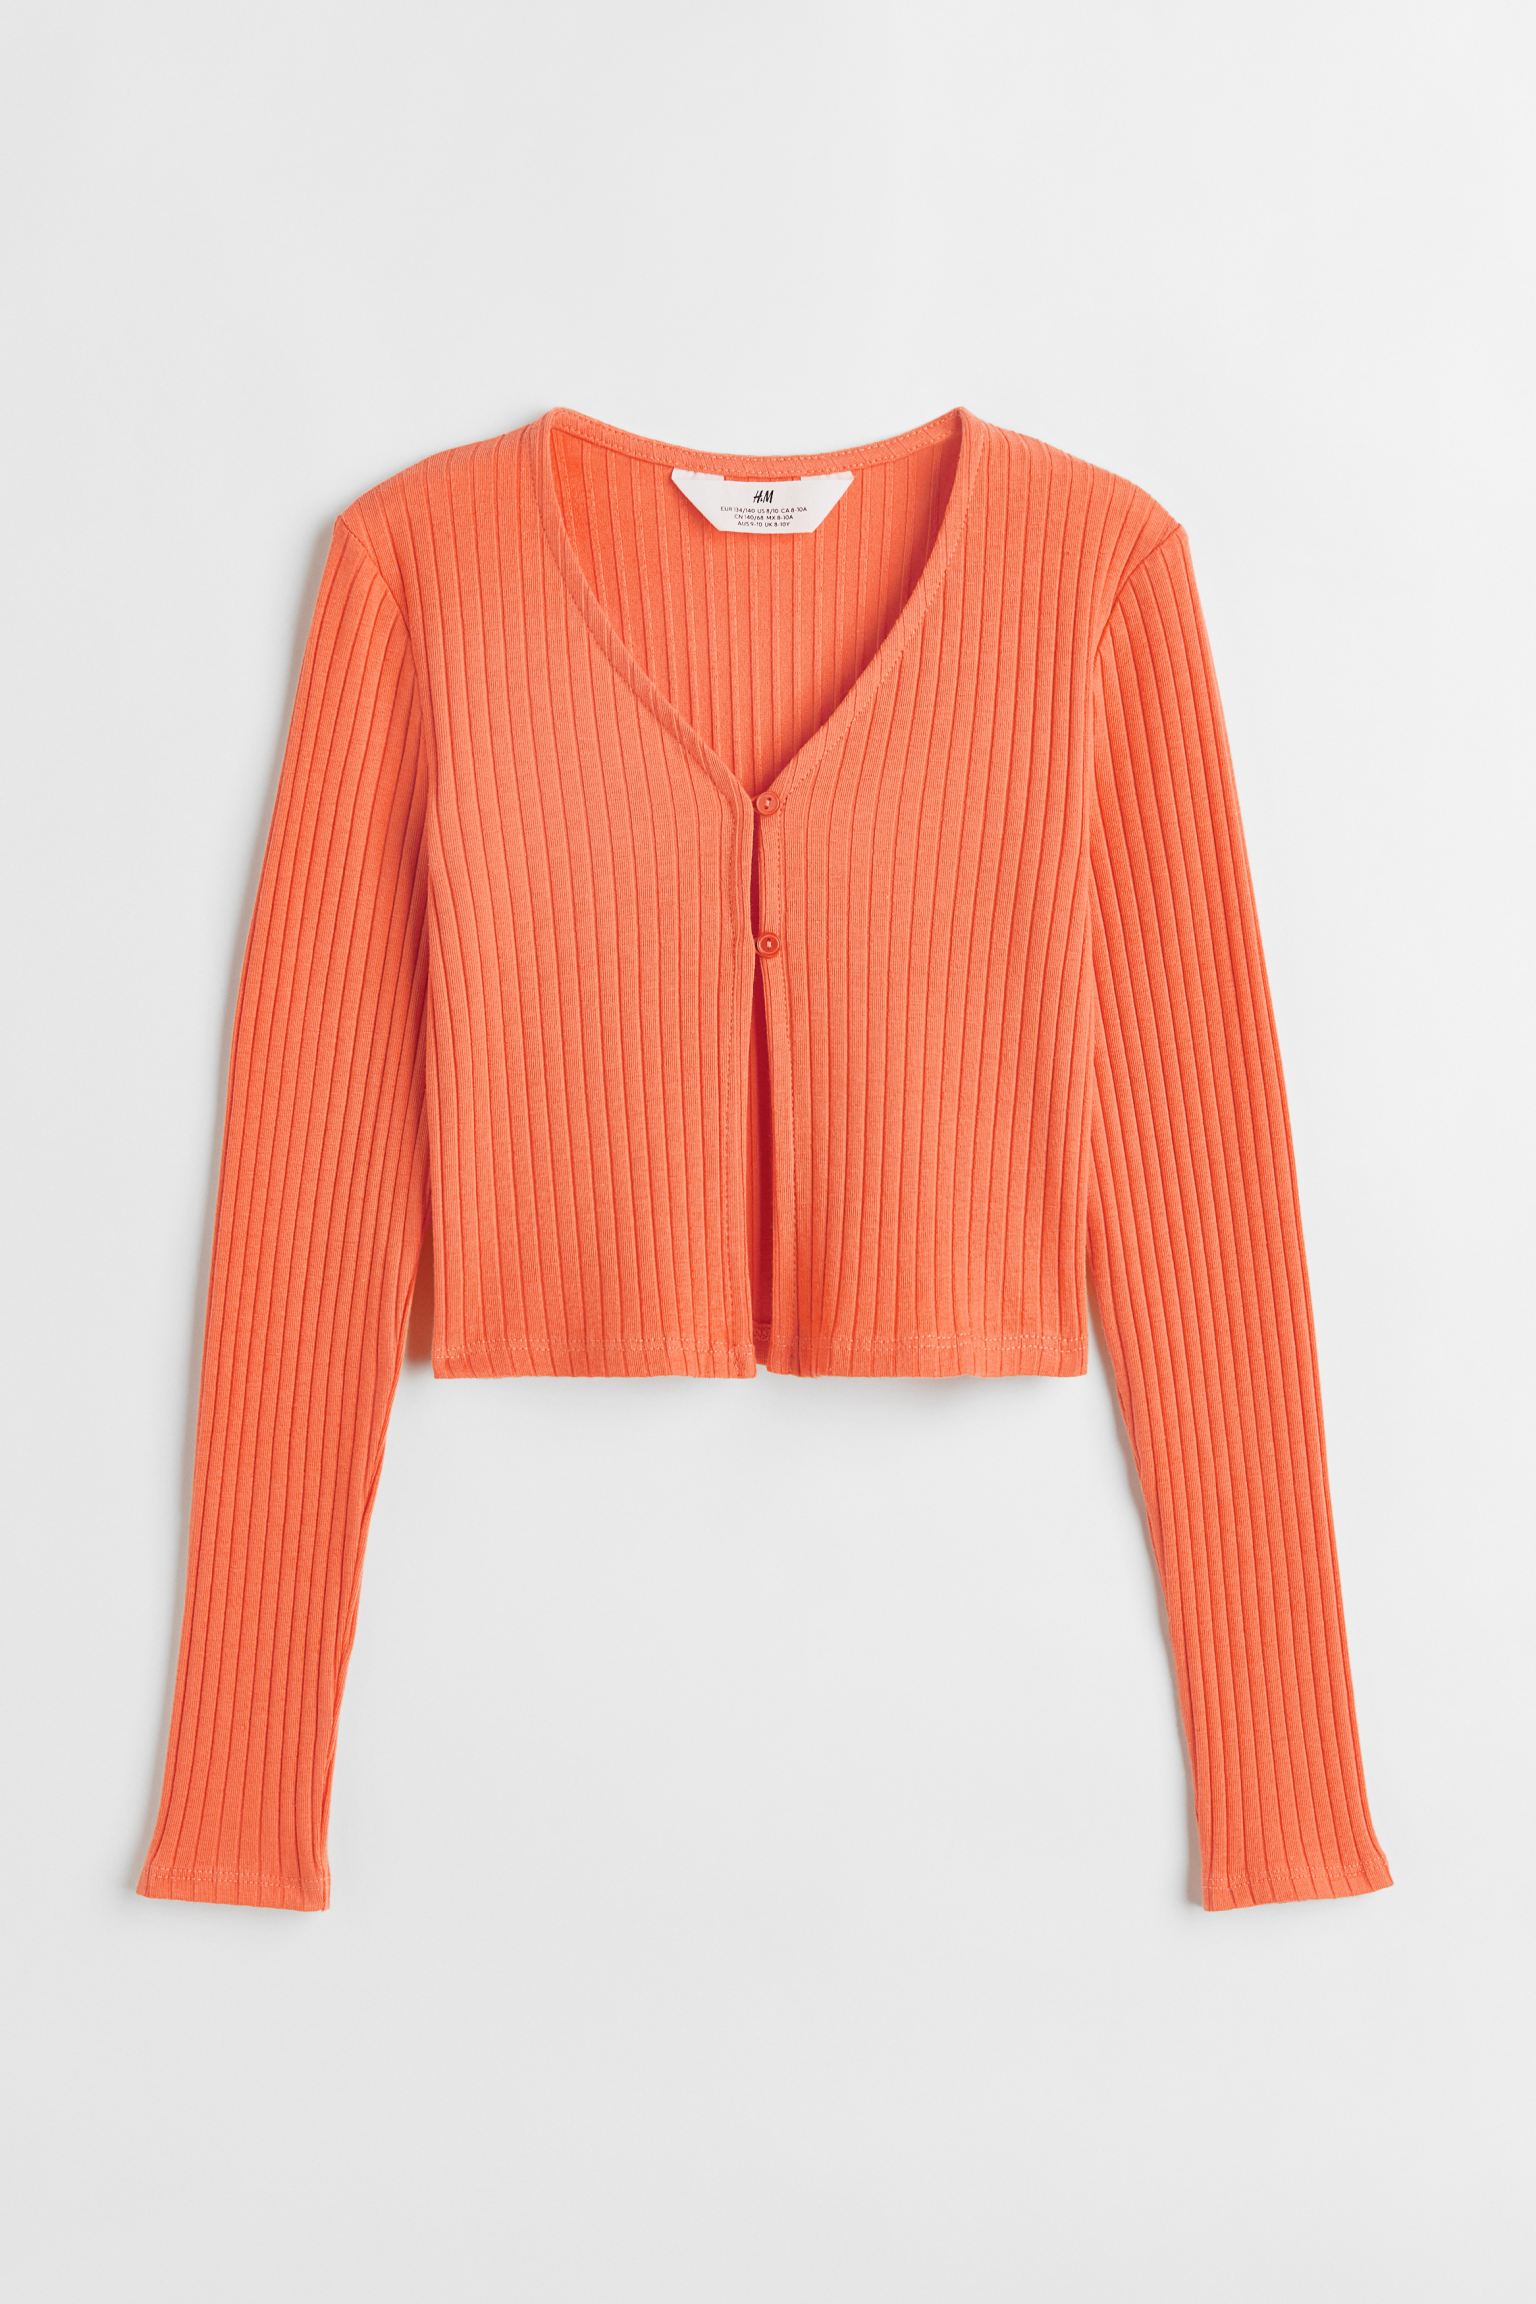 Кардиган H&M для девочек, оранжевый-002, размер 158/164, 1120731002